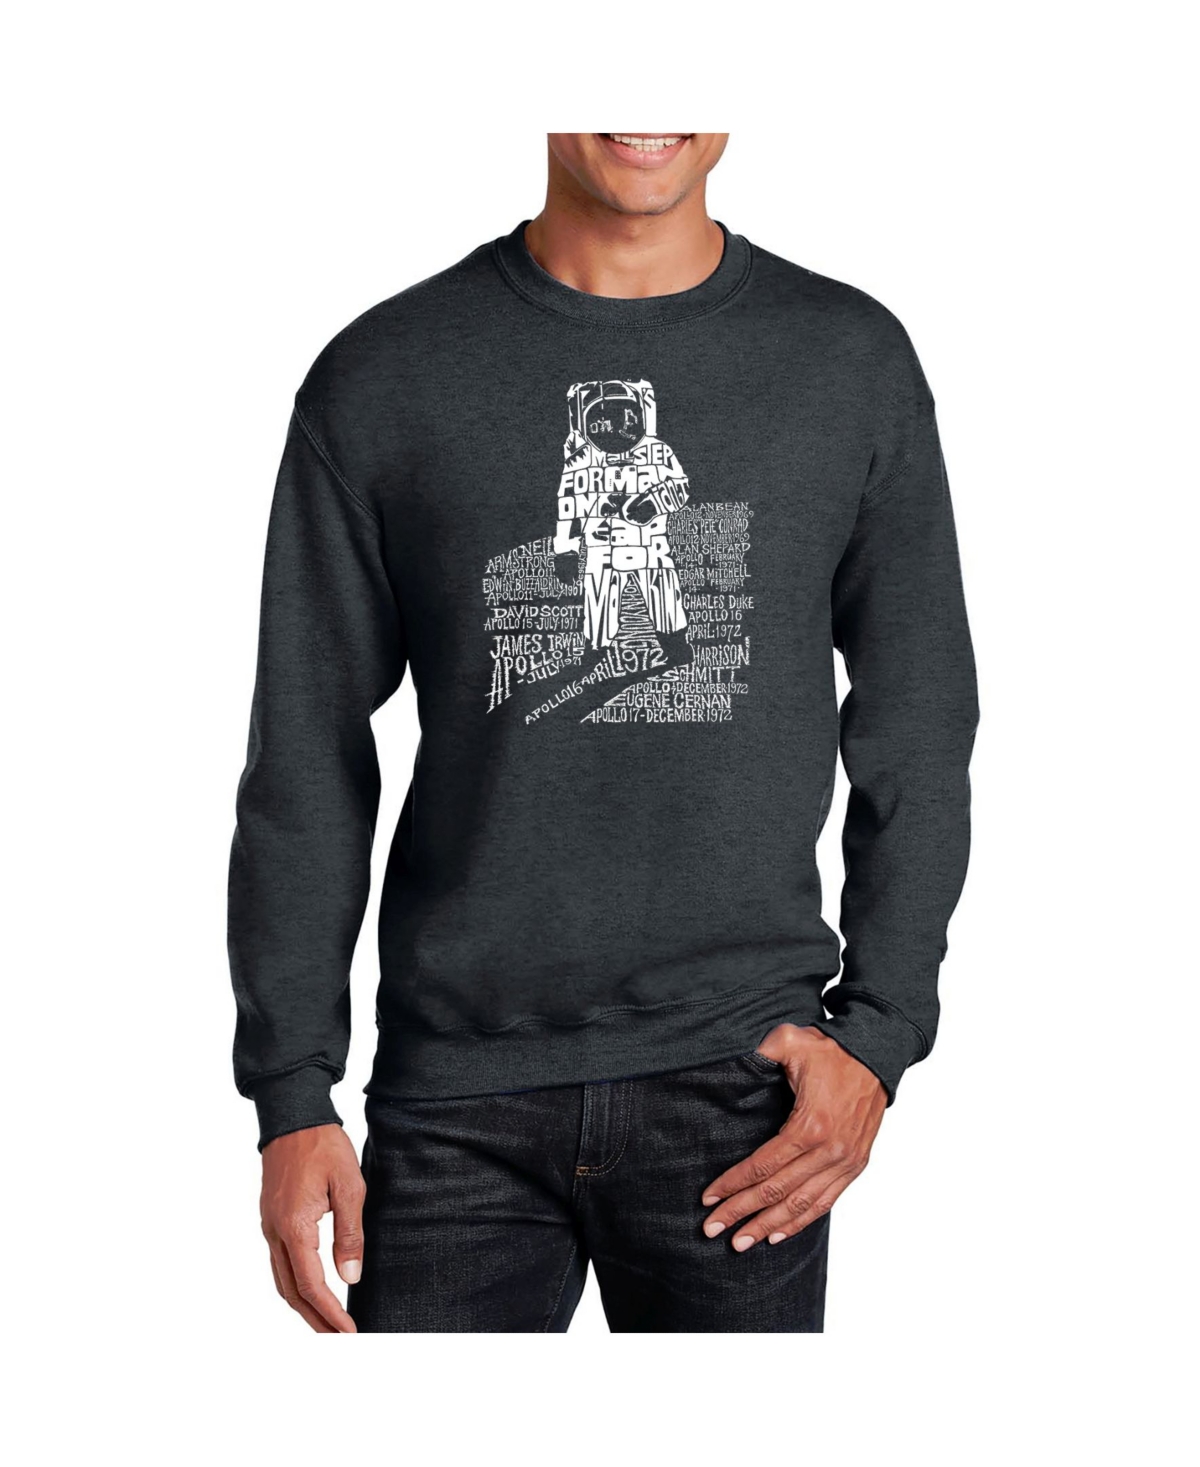 Men's Word Art Astronaut Crewneck Sweatshirt - Gray